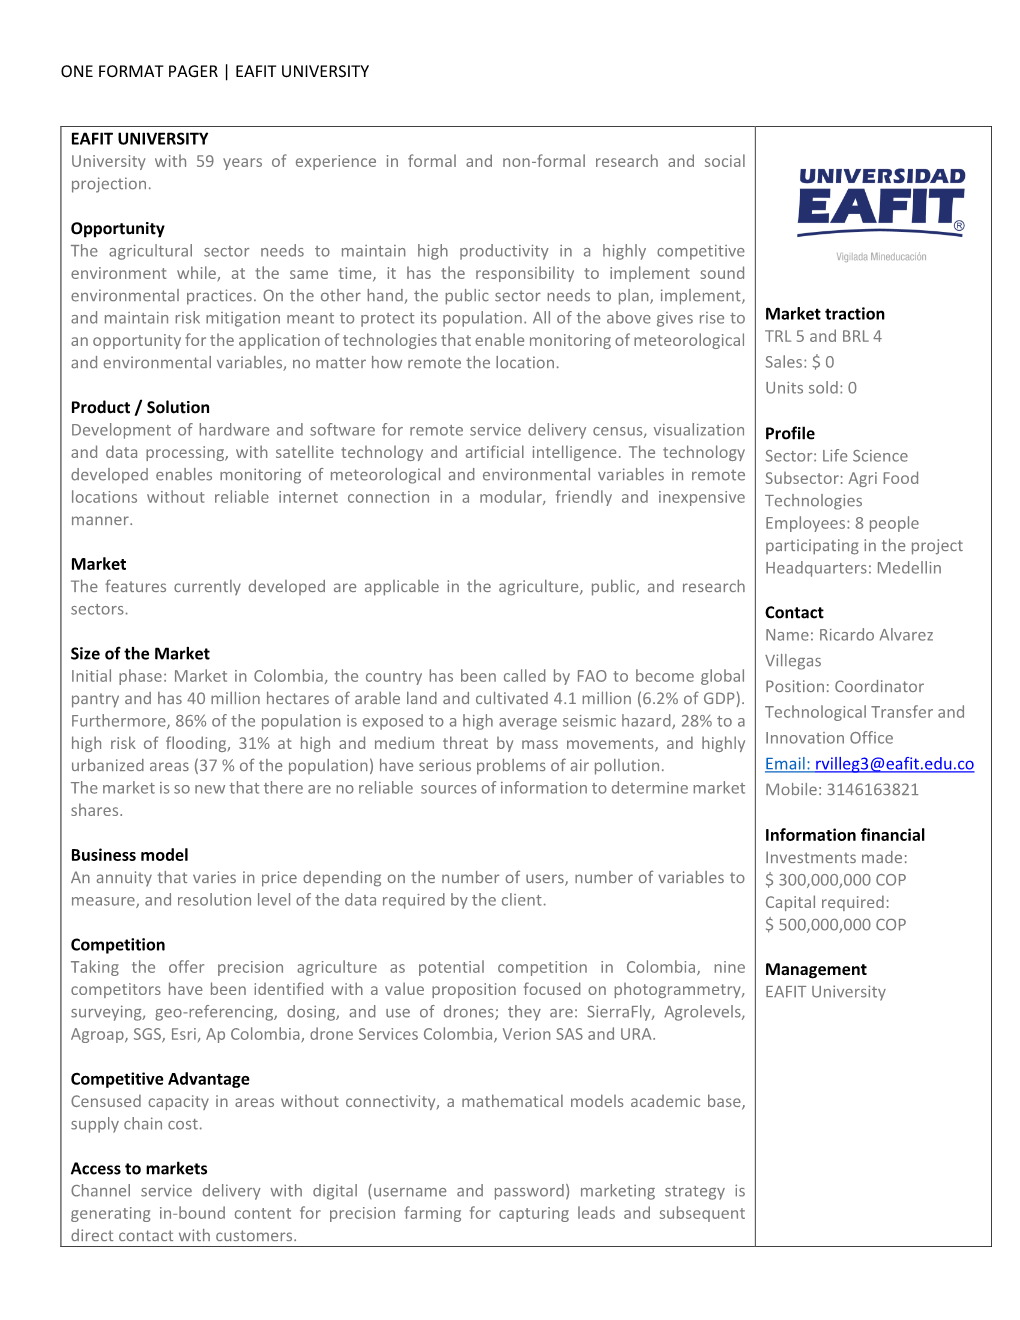 One Format Pager | Eafit University Eafit University